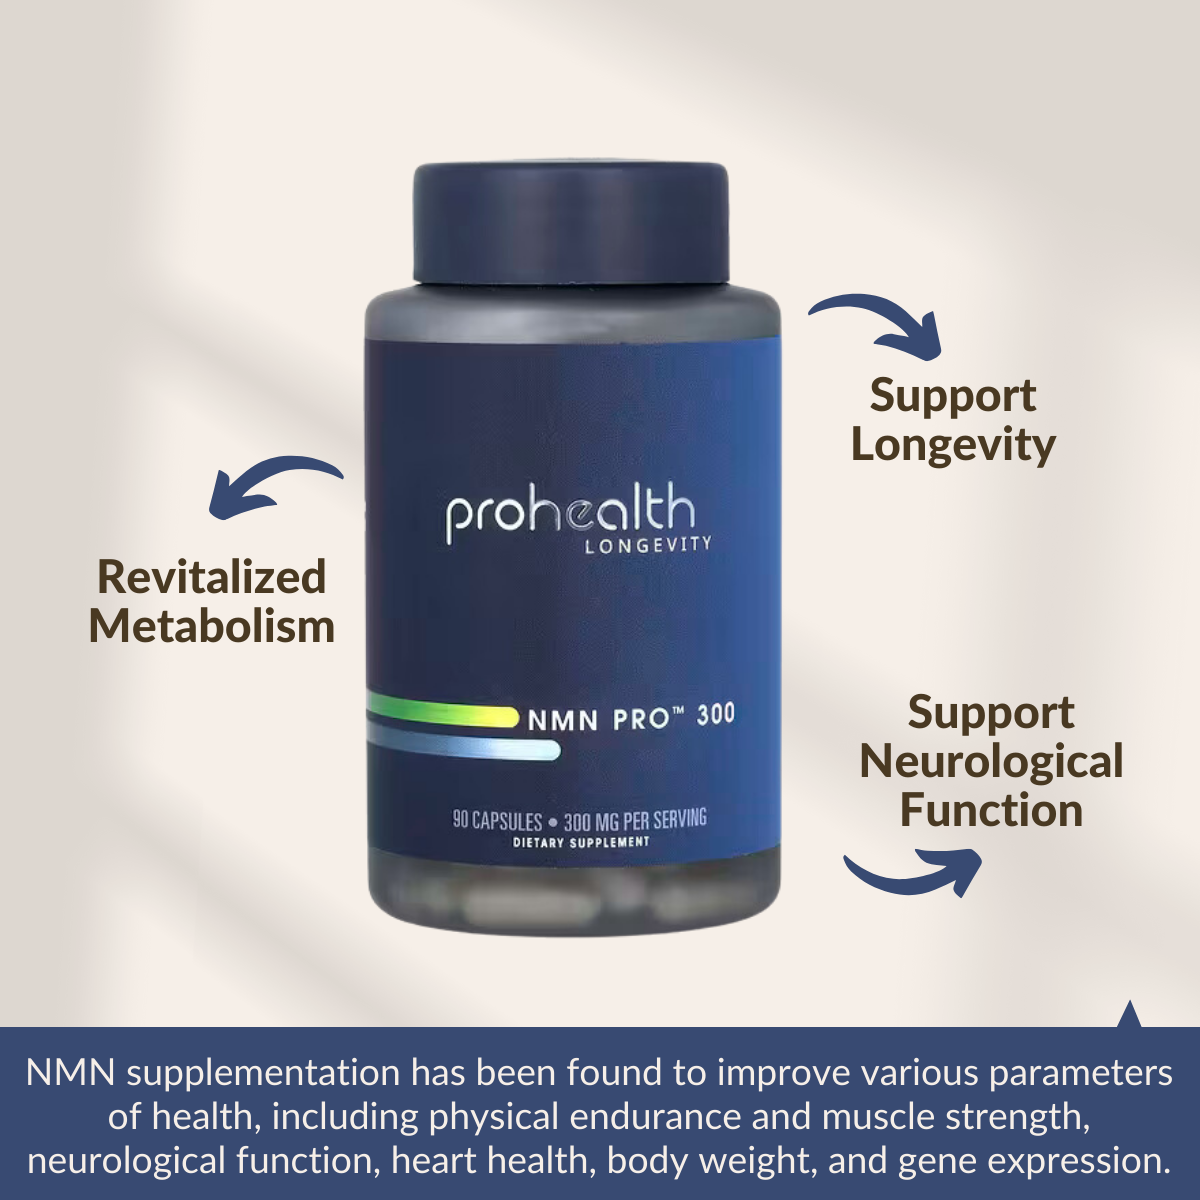 ProHealth Longevity, NMN Pro 300, 300 mg, 90 Capsules, Benefits